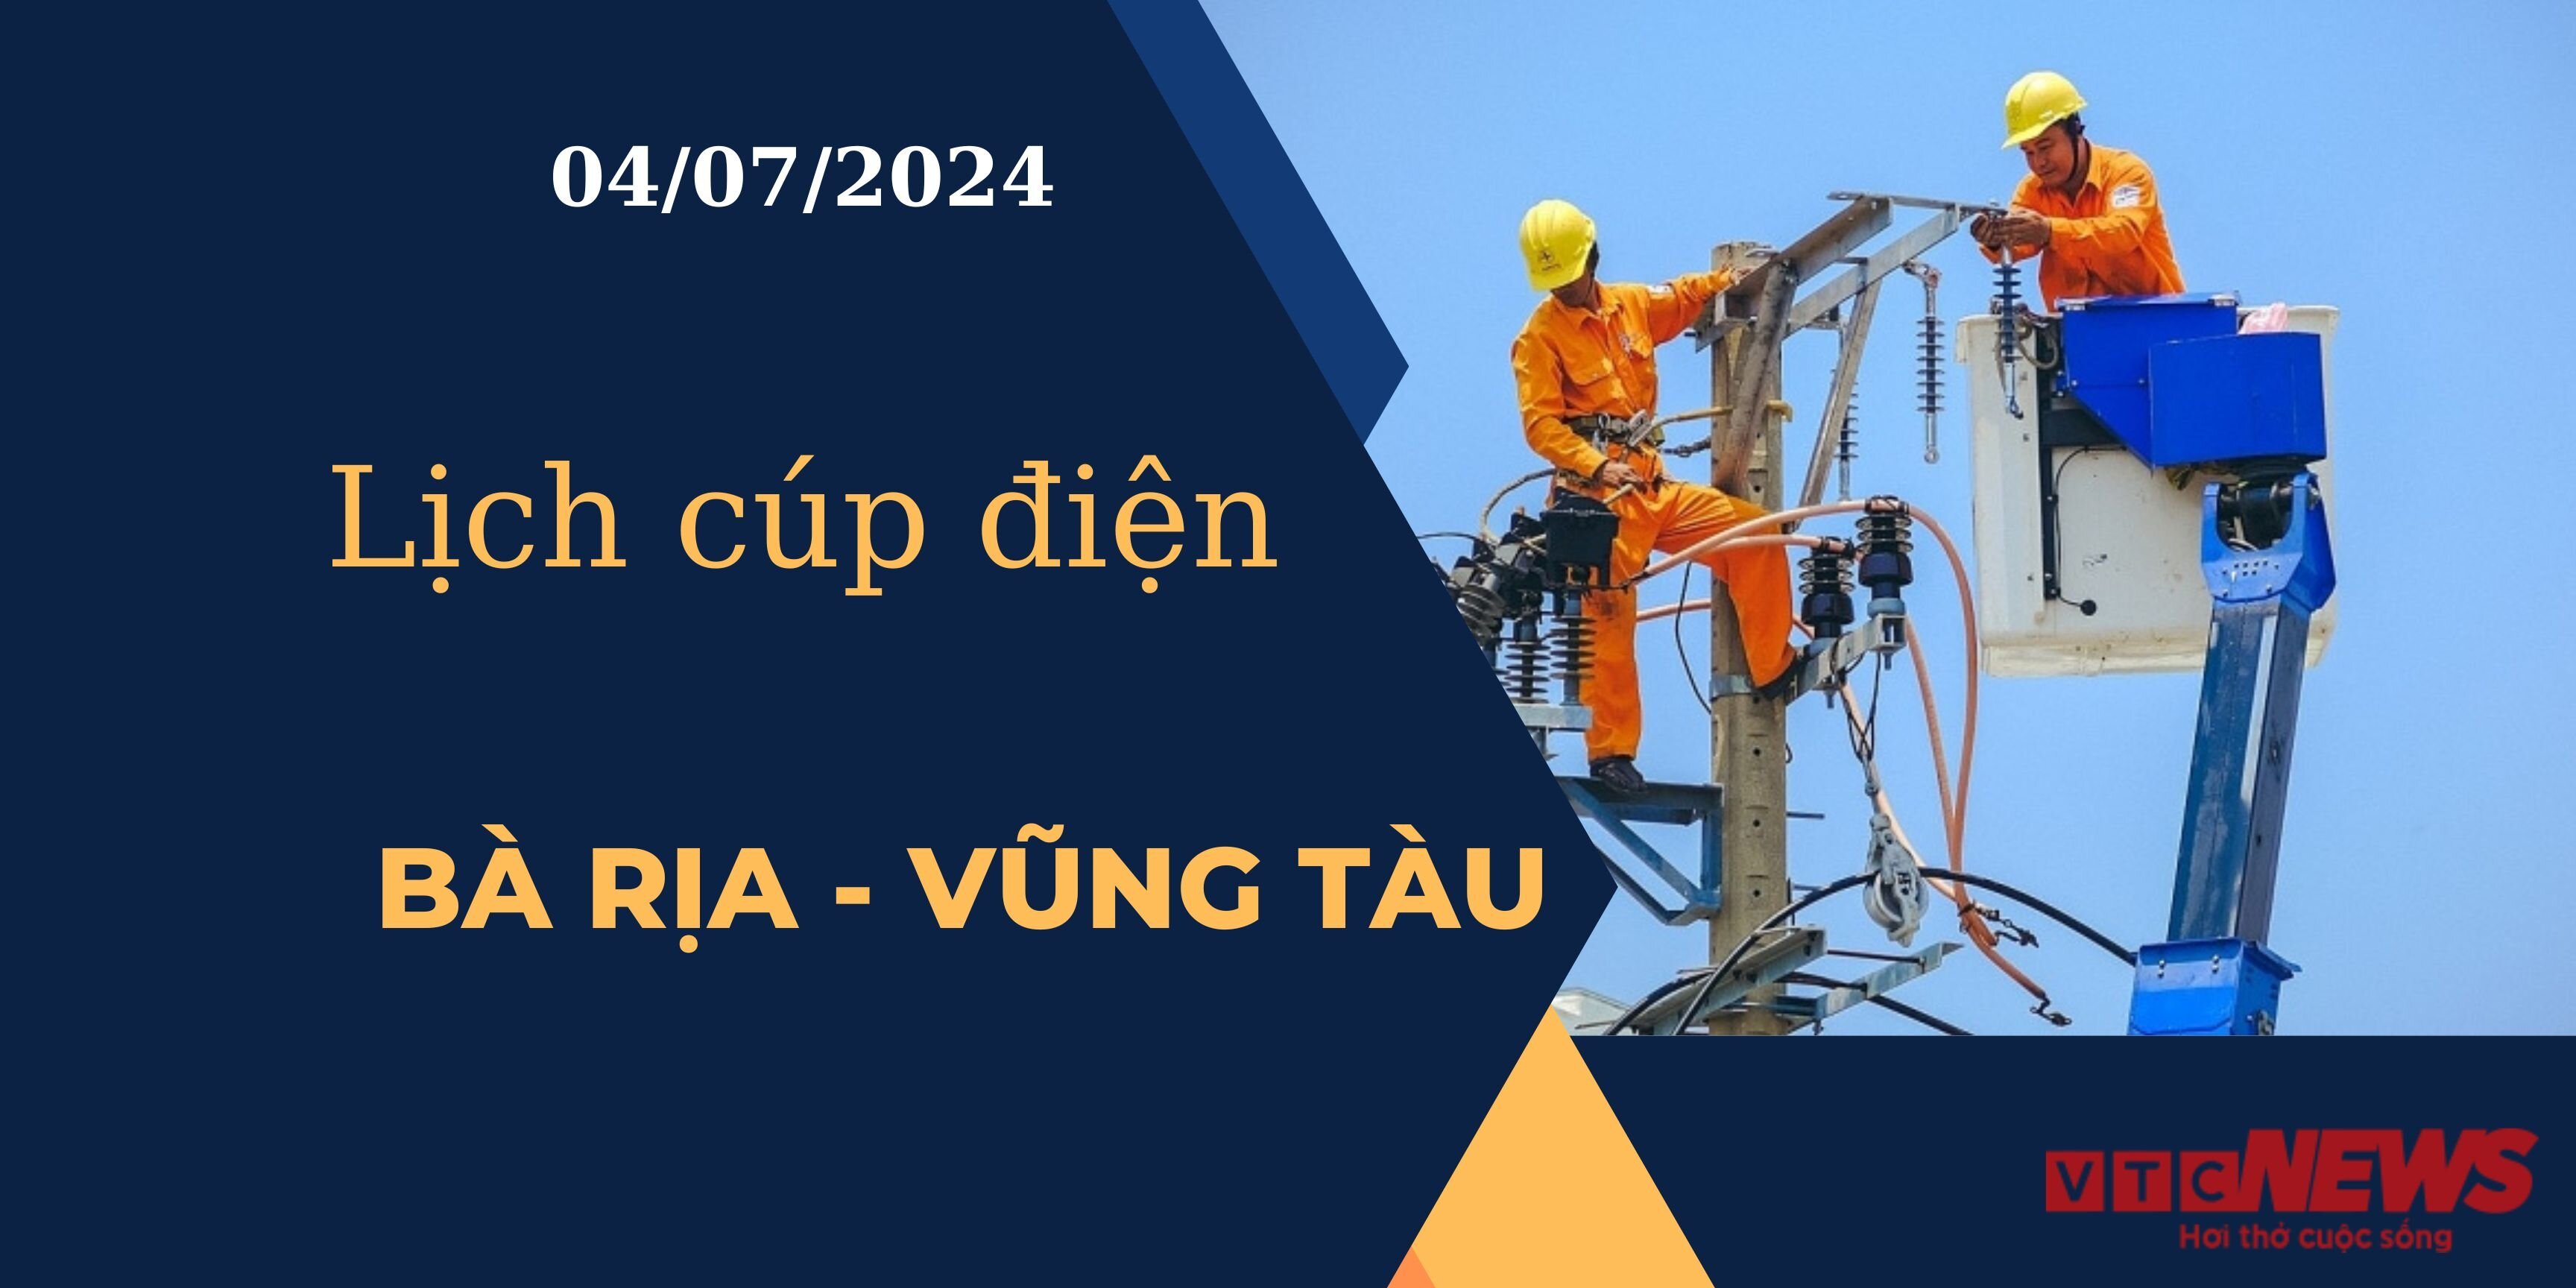 Lịch cúp điện hôm nay tại Bà Rịa - Vũng Tàu ngày 04/07/2024